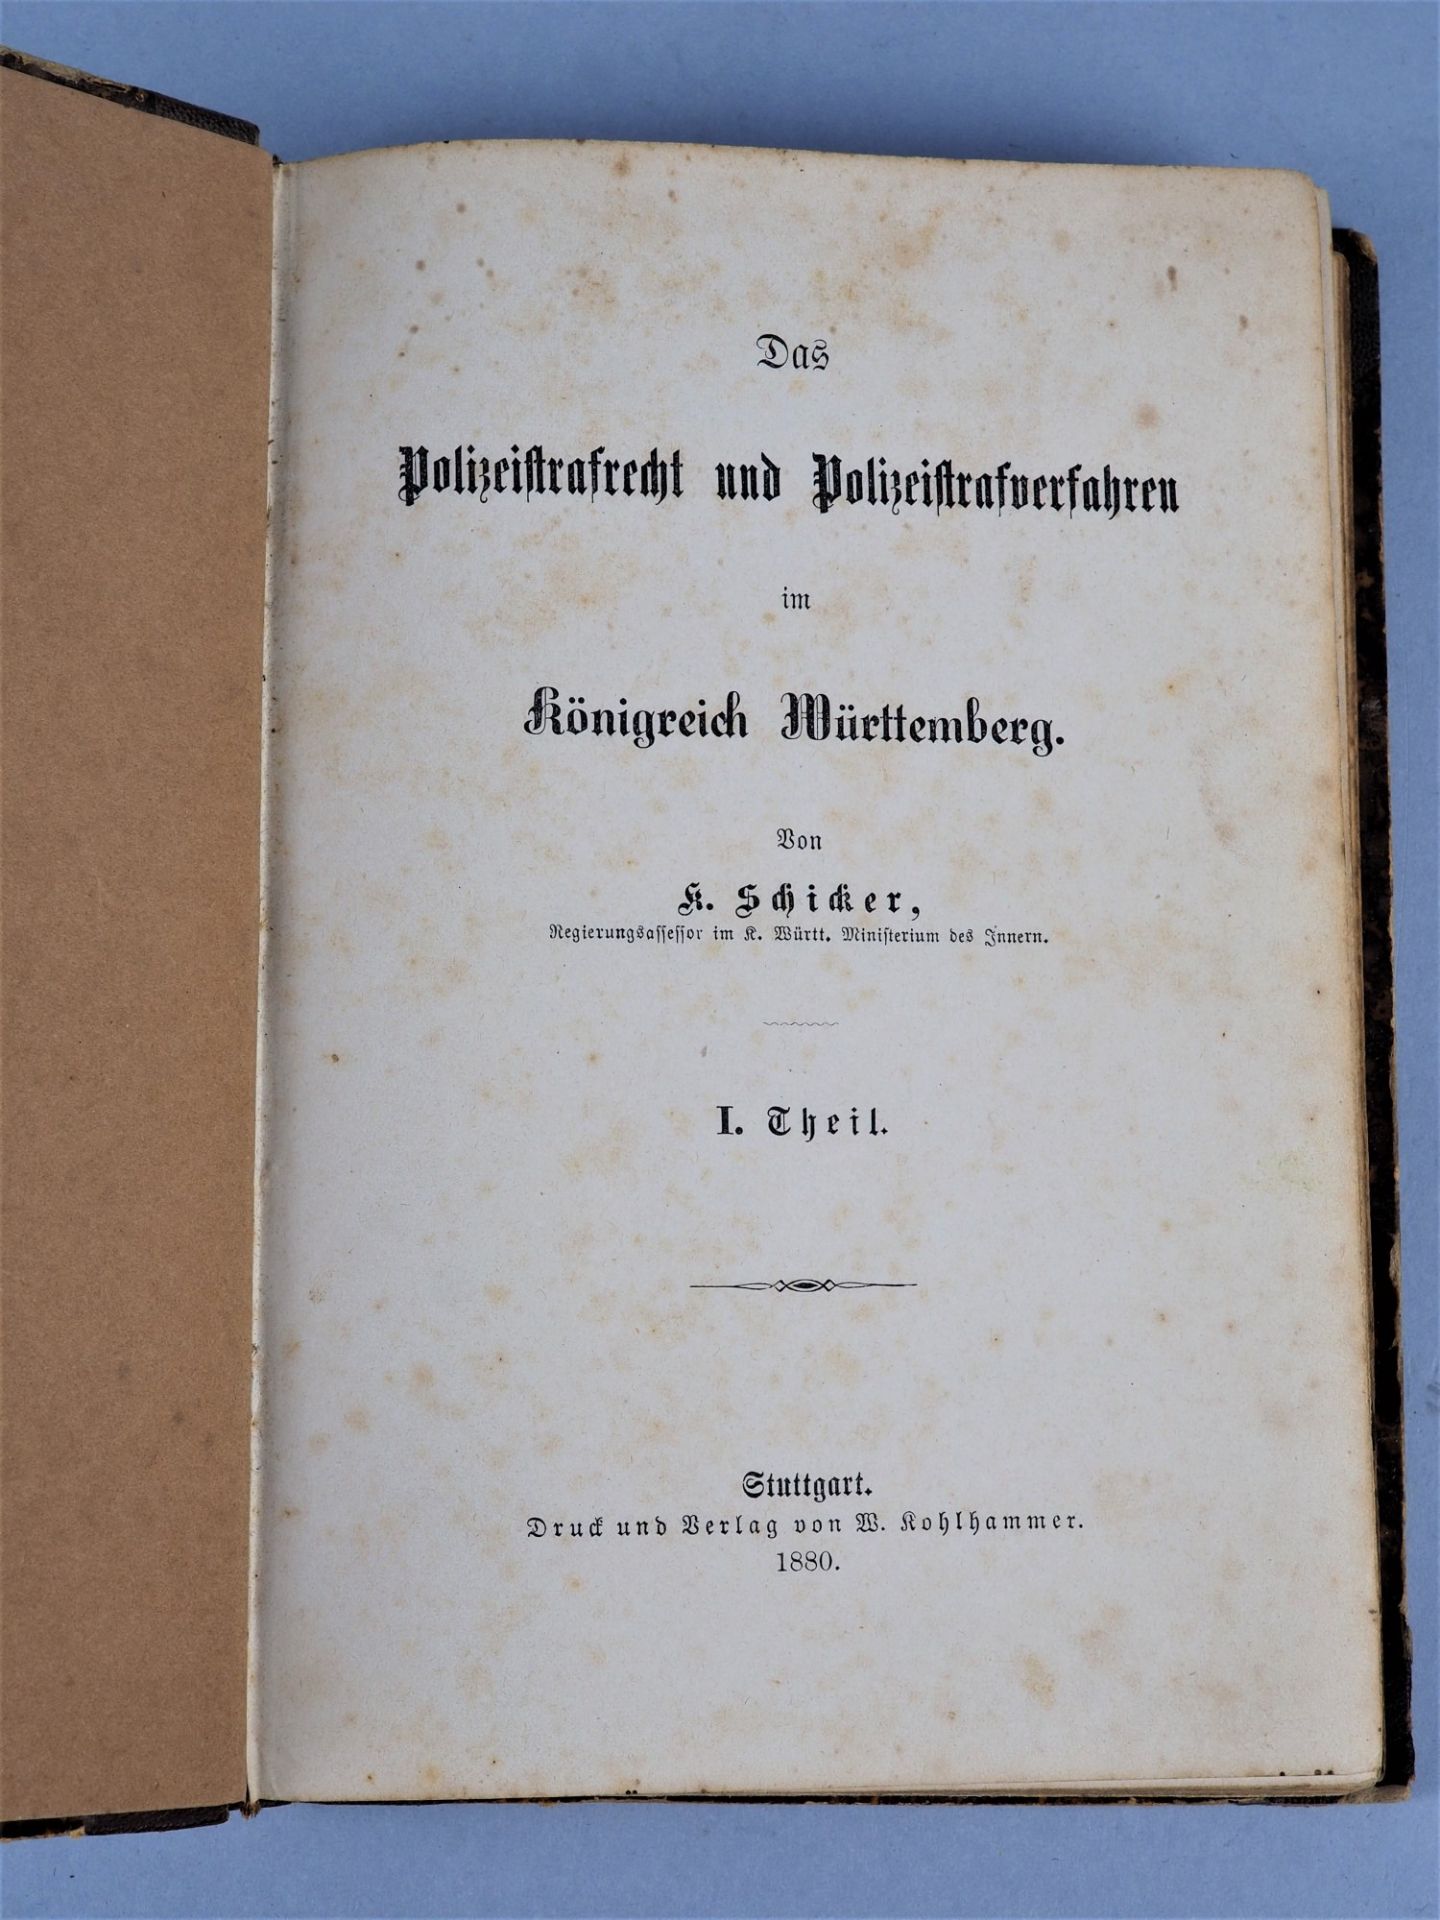 Buch: Das Polizeistrafrecht und Polizeistrafverfahren von 1880 - Bild 2 aus 2